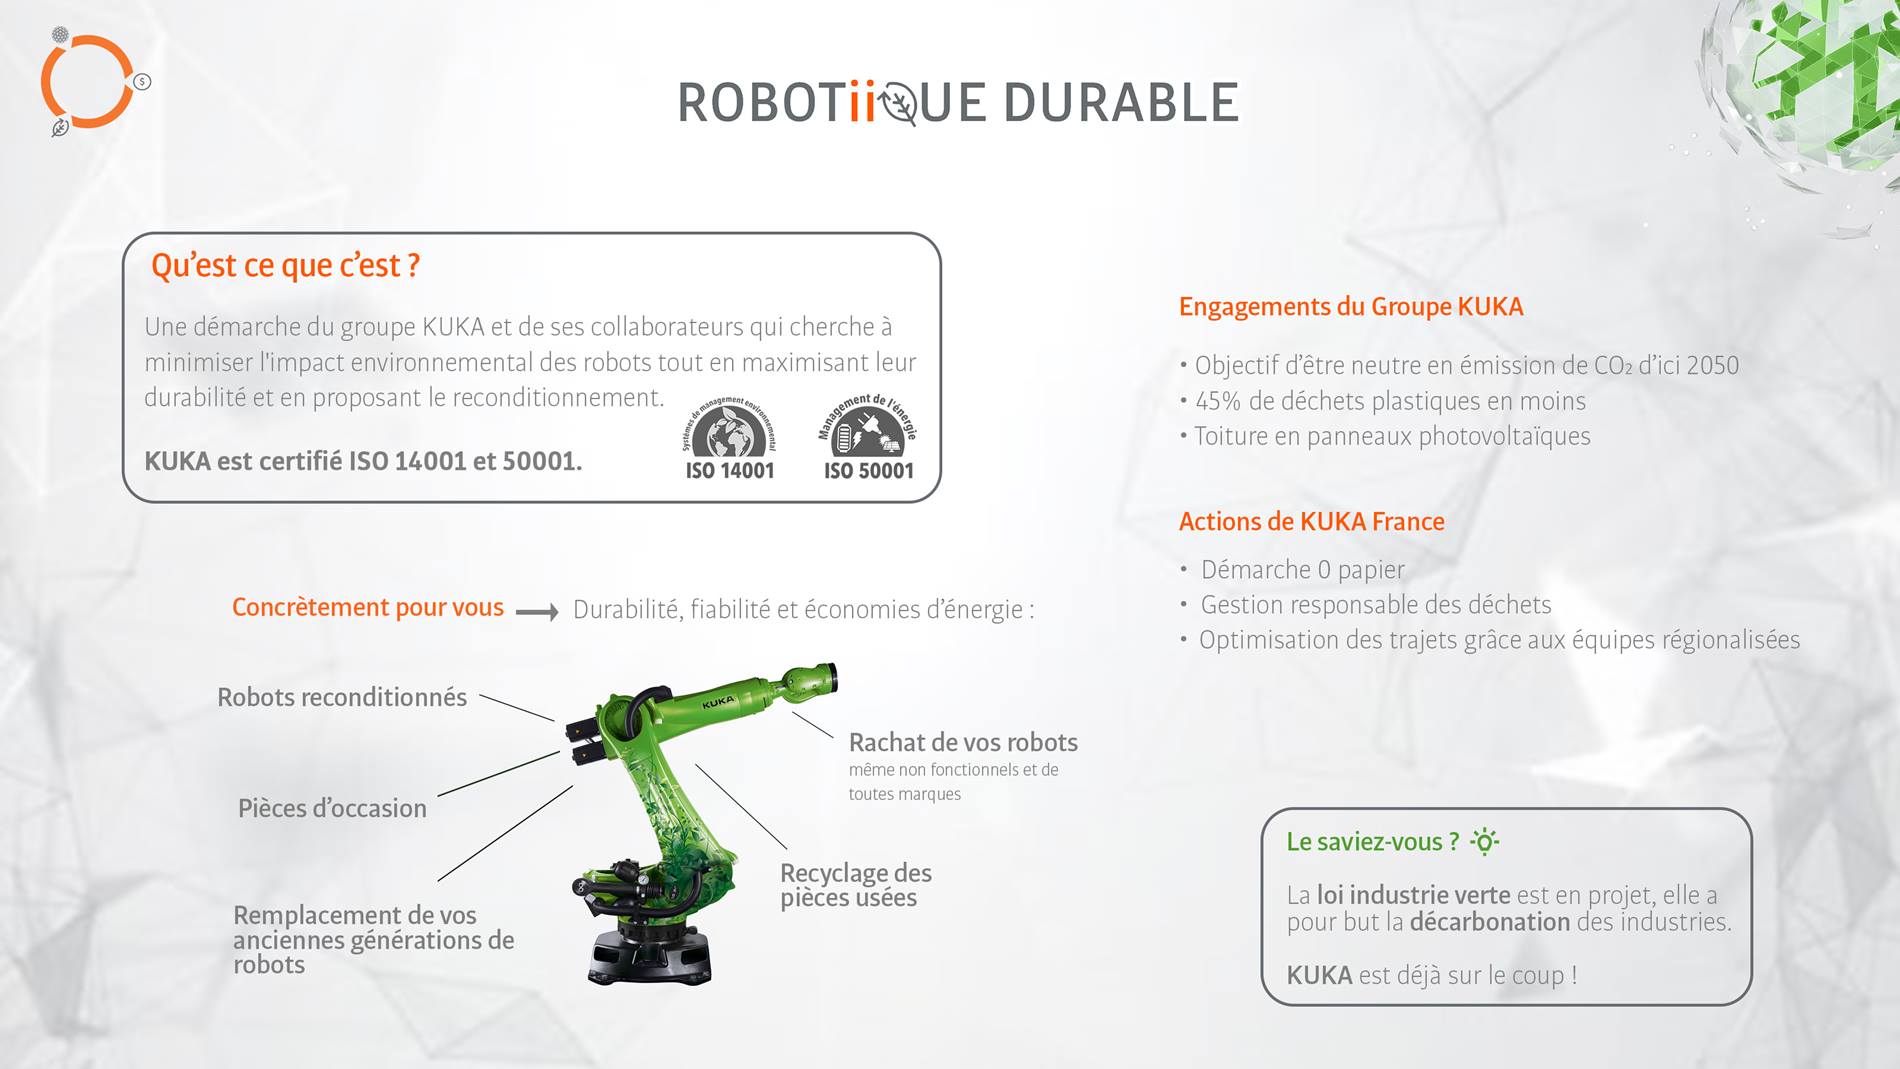 Robotiique_durable_KUKA